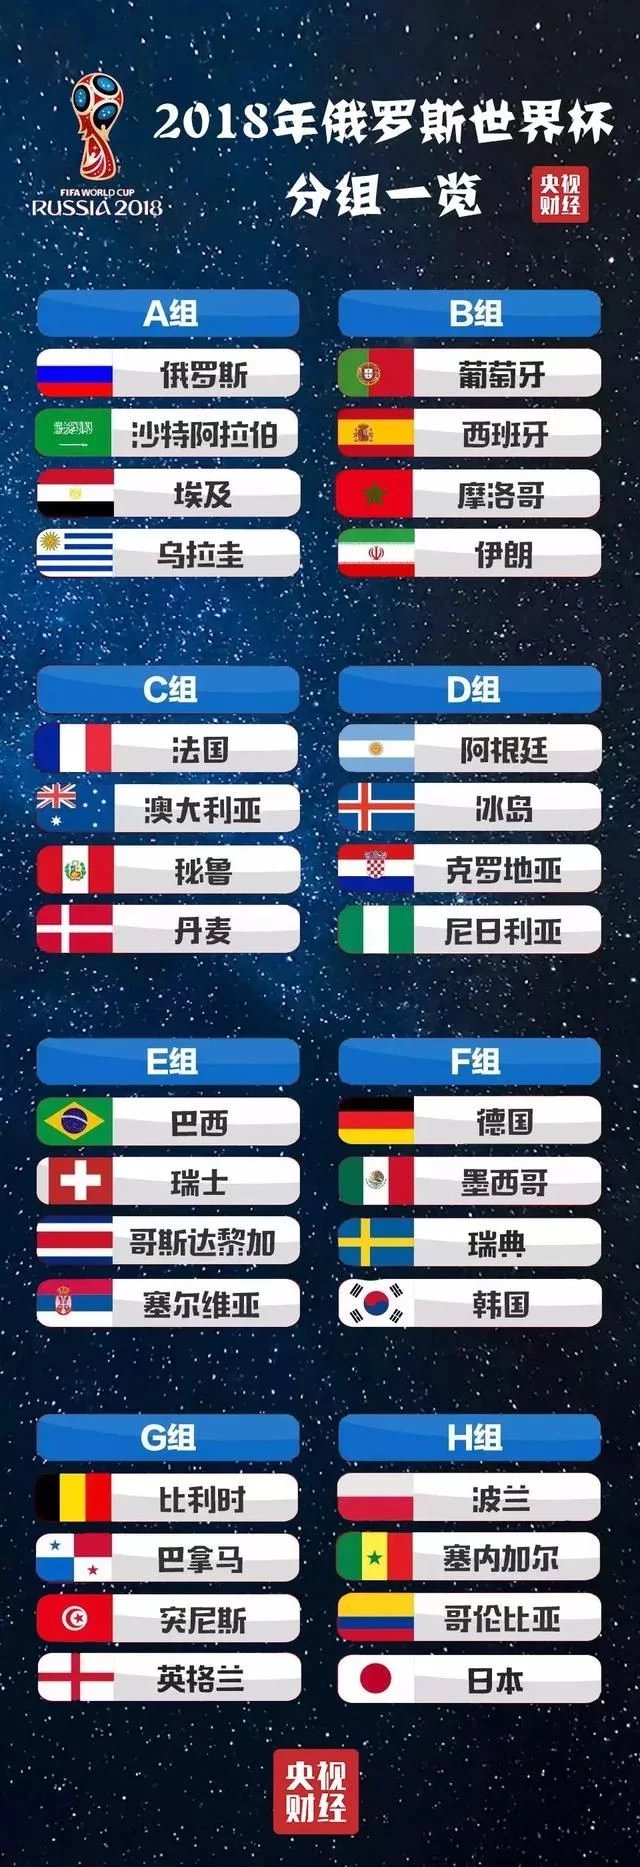 2018世界杯:没有中国队参加,却有10万中国人1